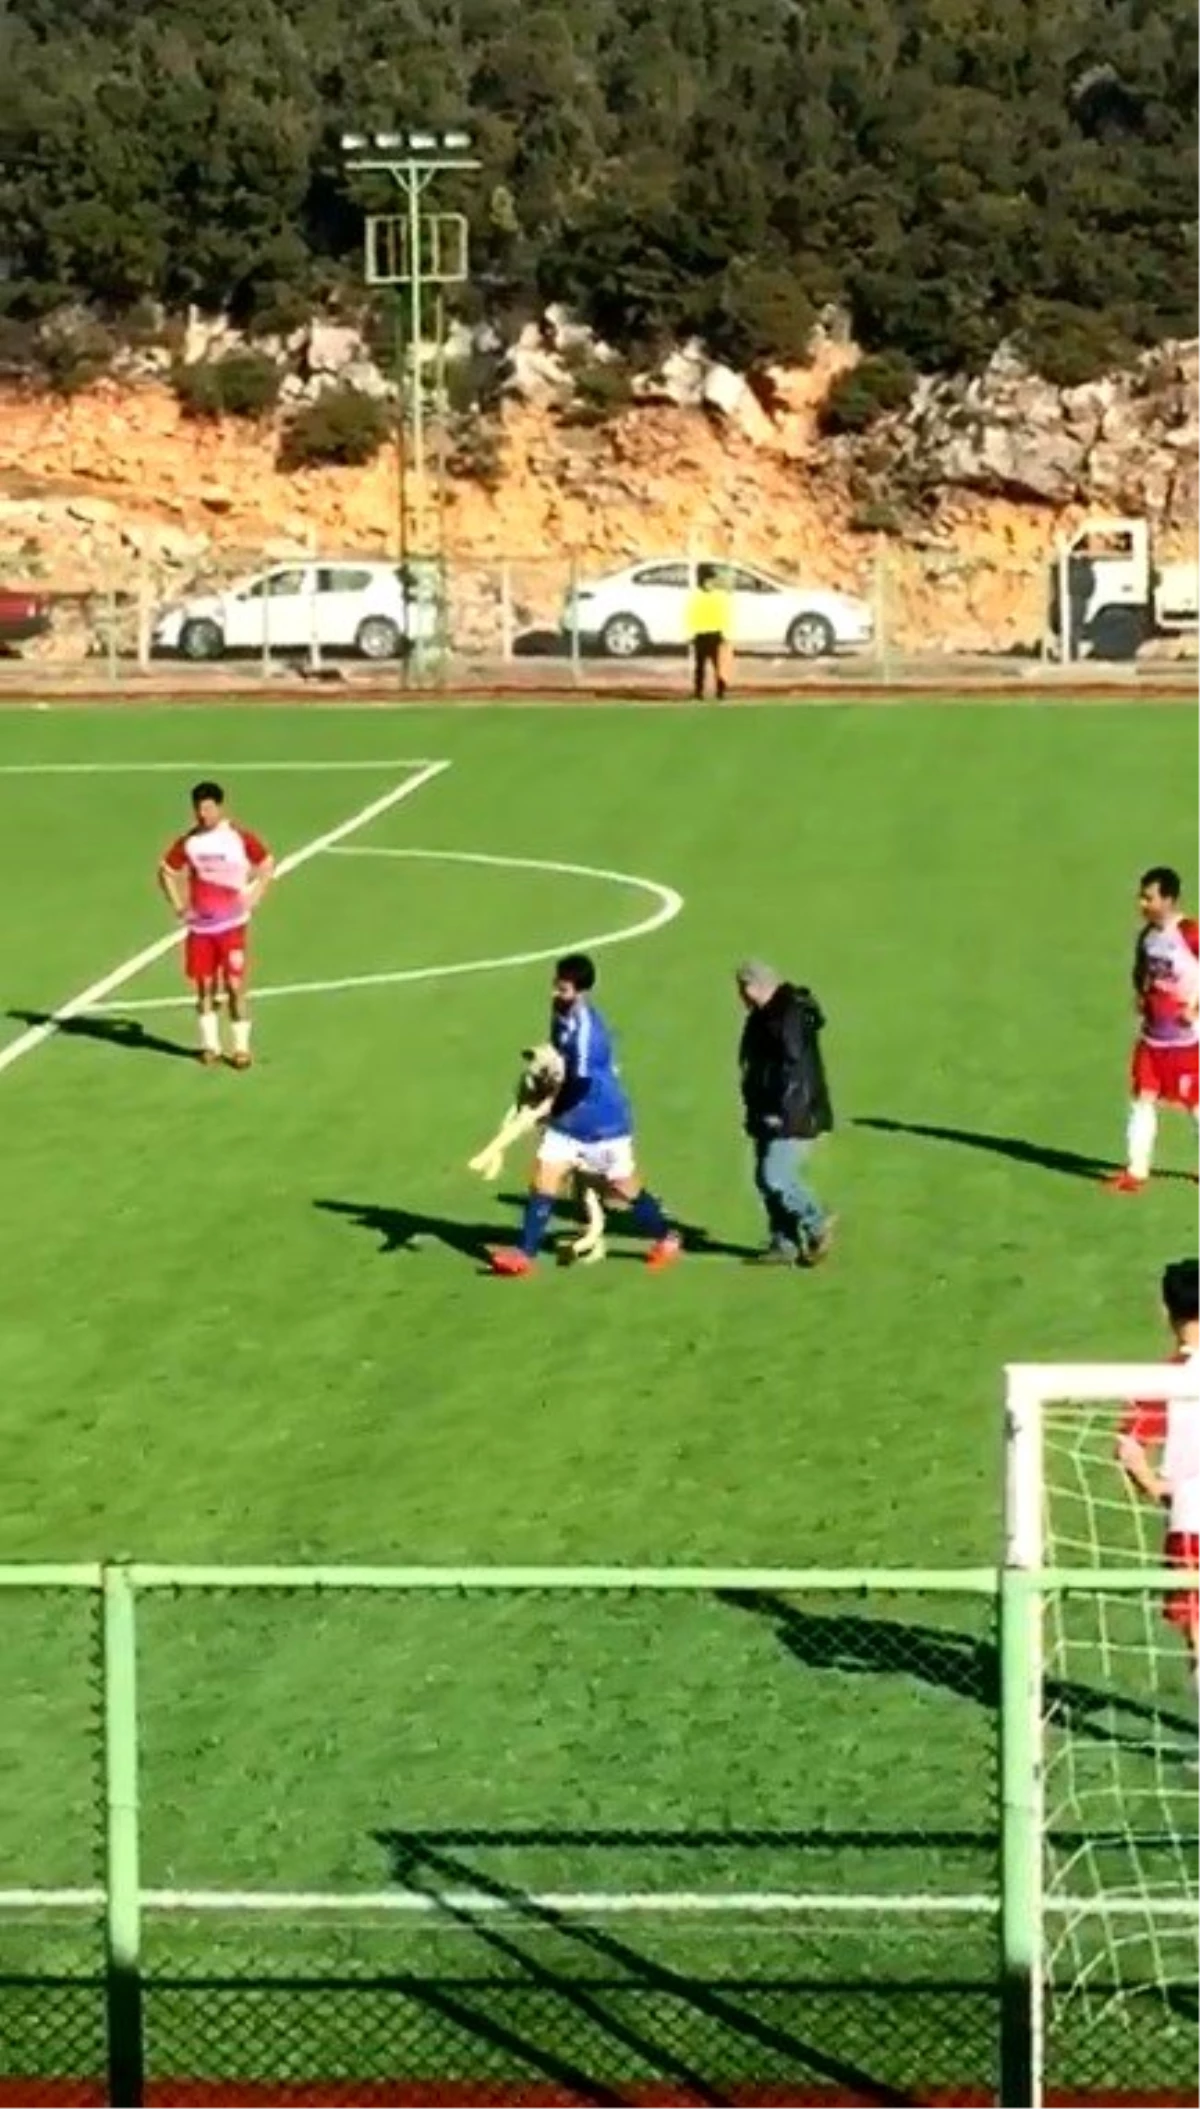 Maç sırasında sahaya giren köpek çıkmak istemeyince devreye futbolcular girdi